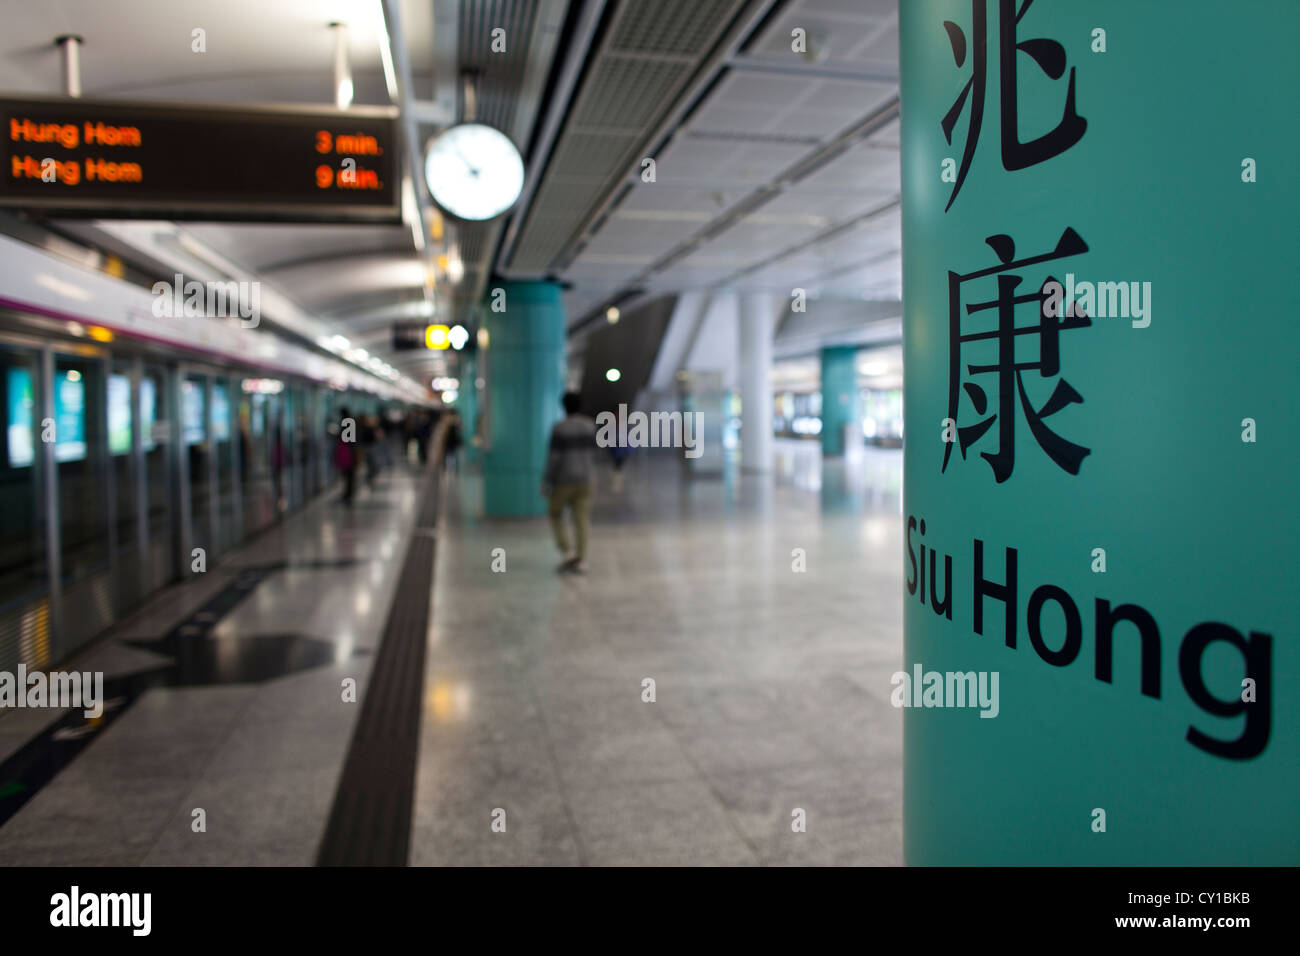 Hongkong subway system Stock Photo